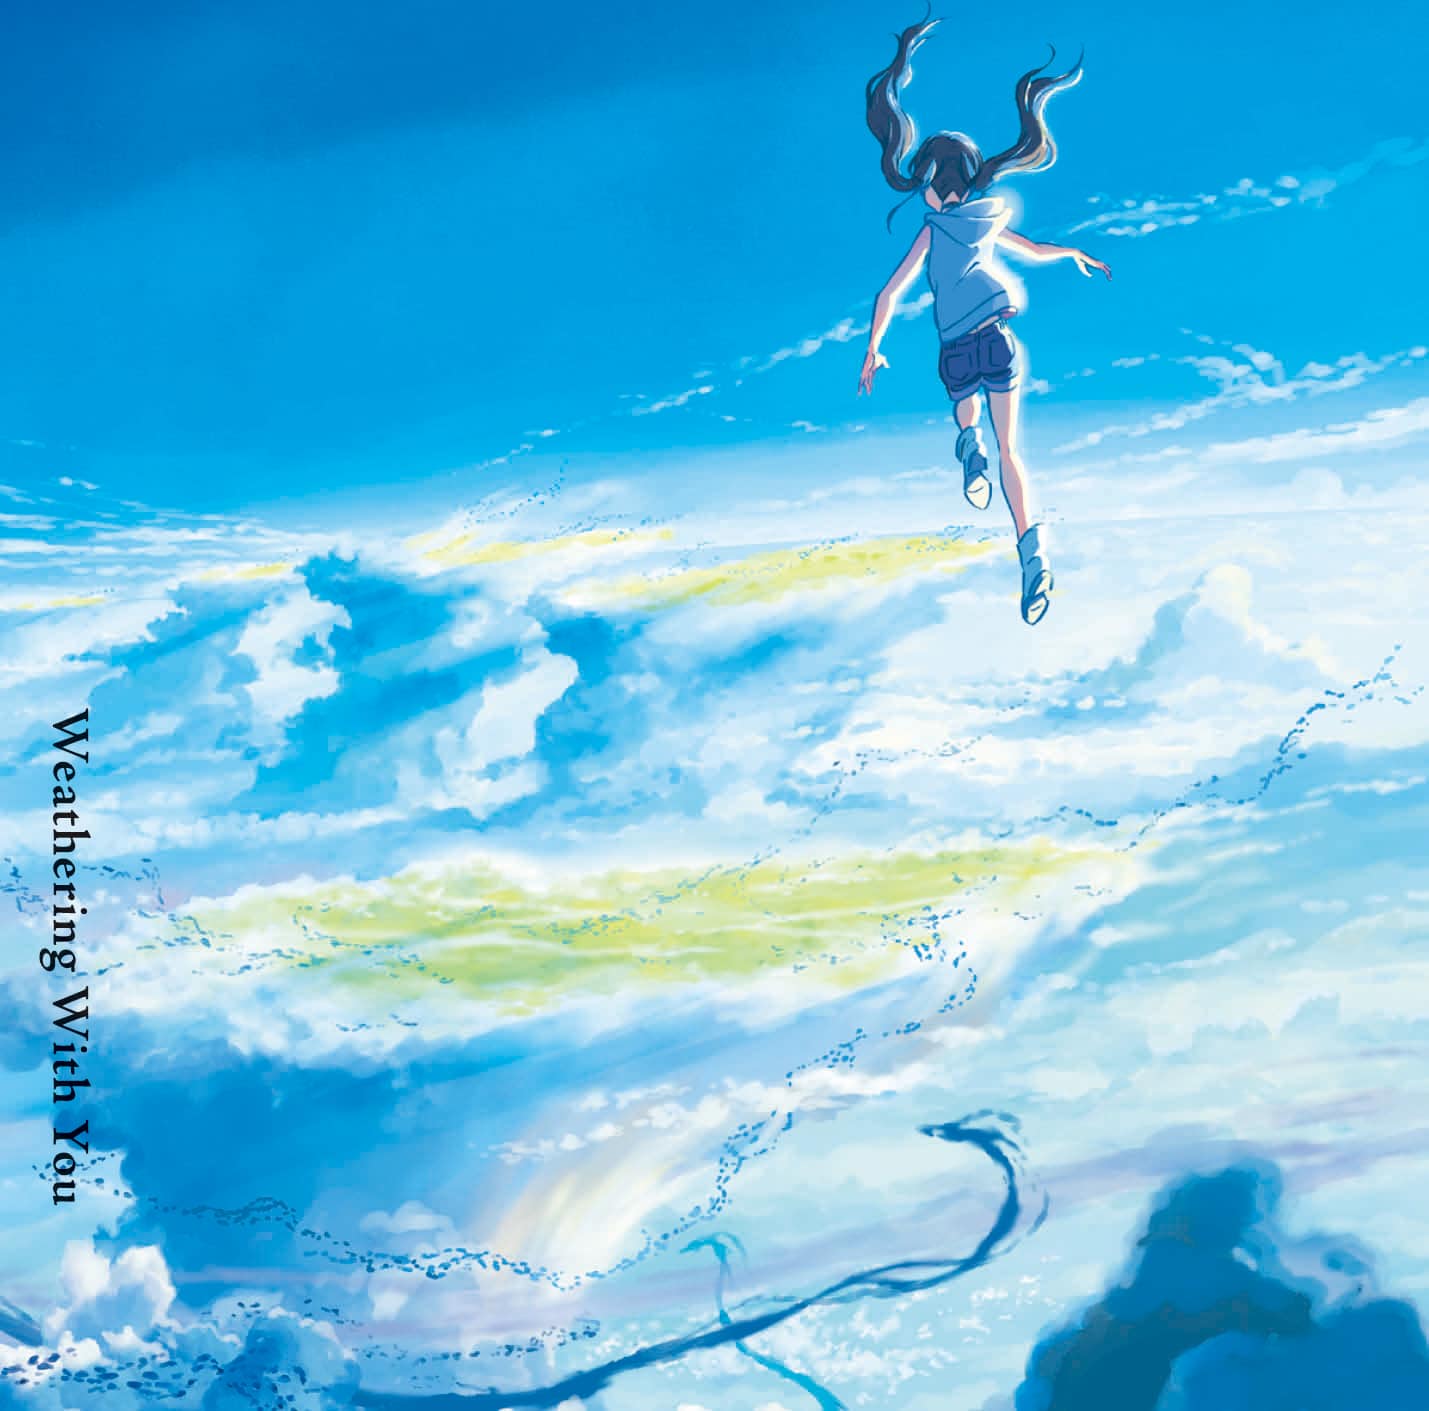 Kimi no Na wa (Your Name) Soundtrack - Main Theme 